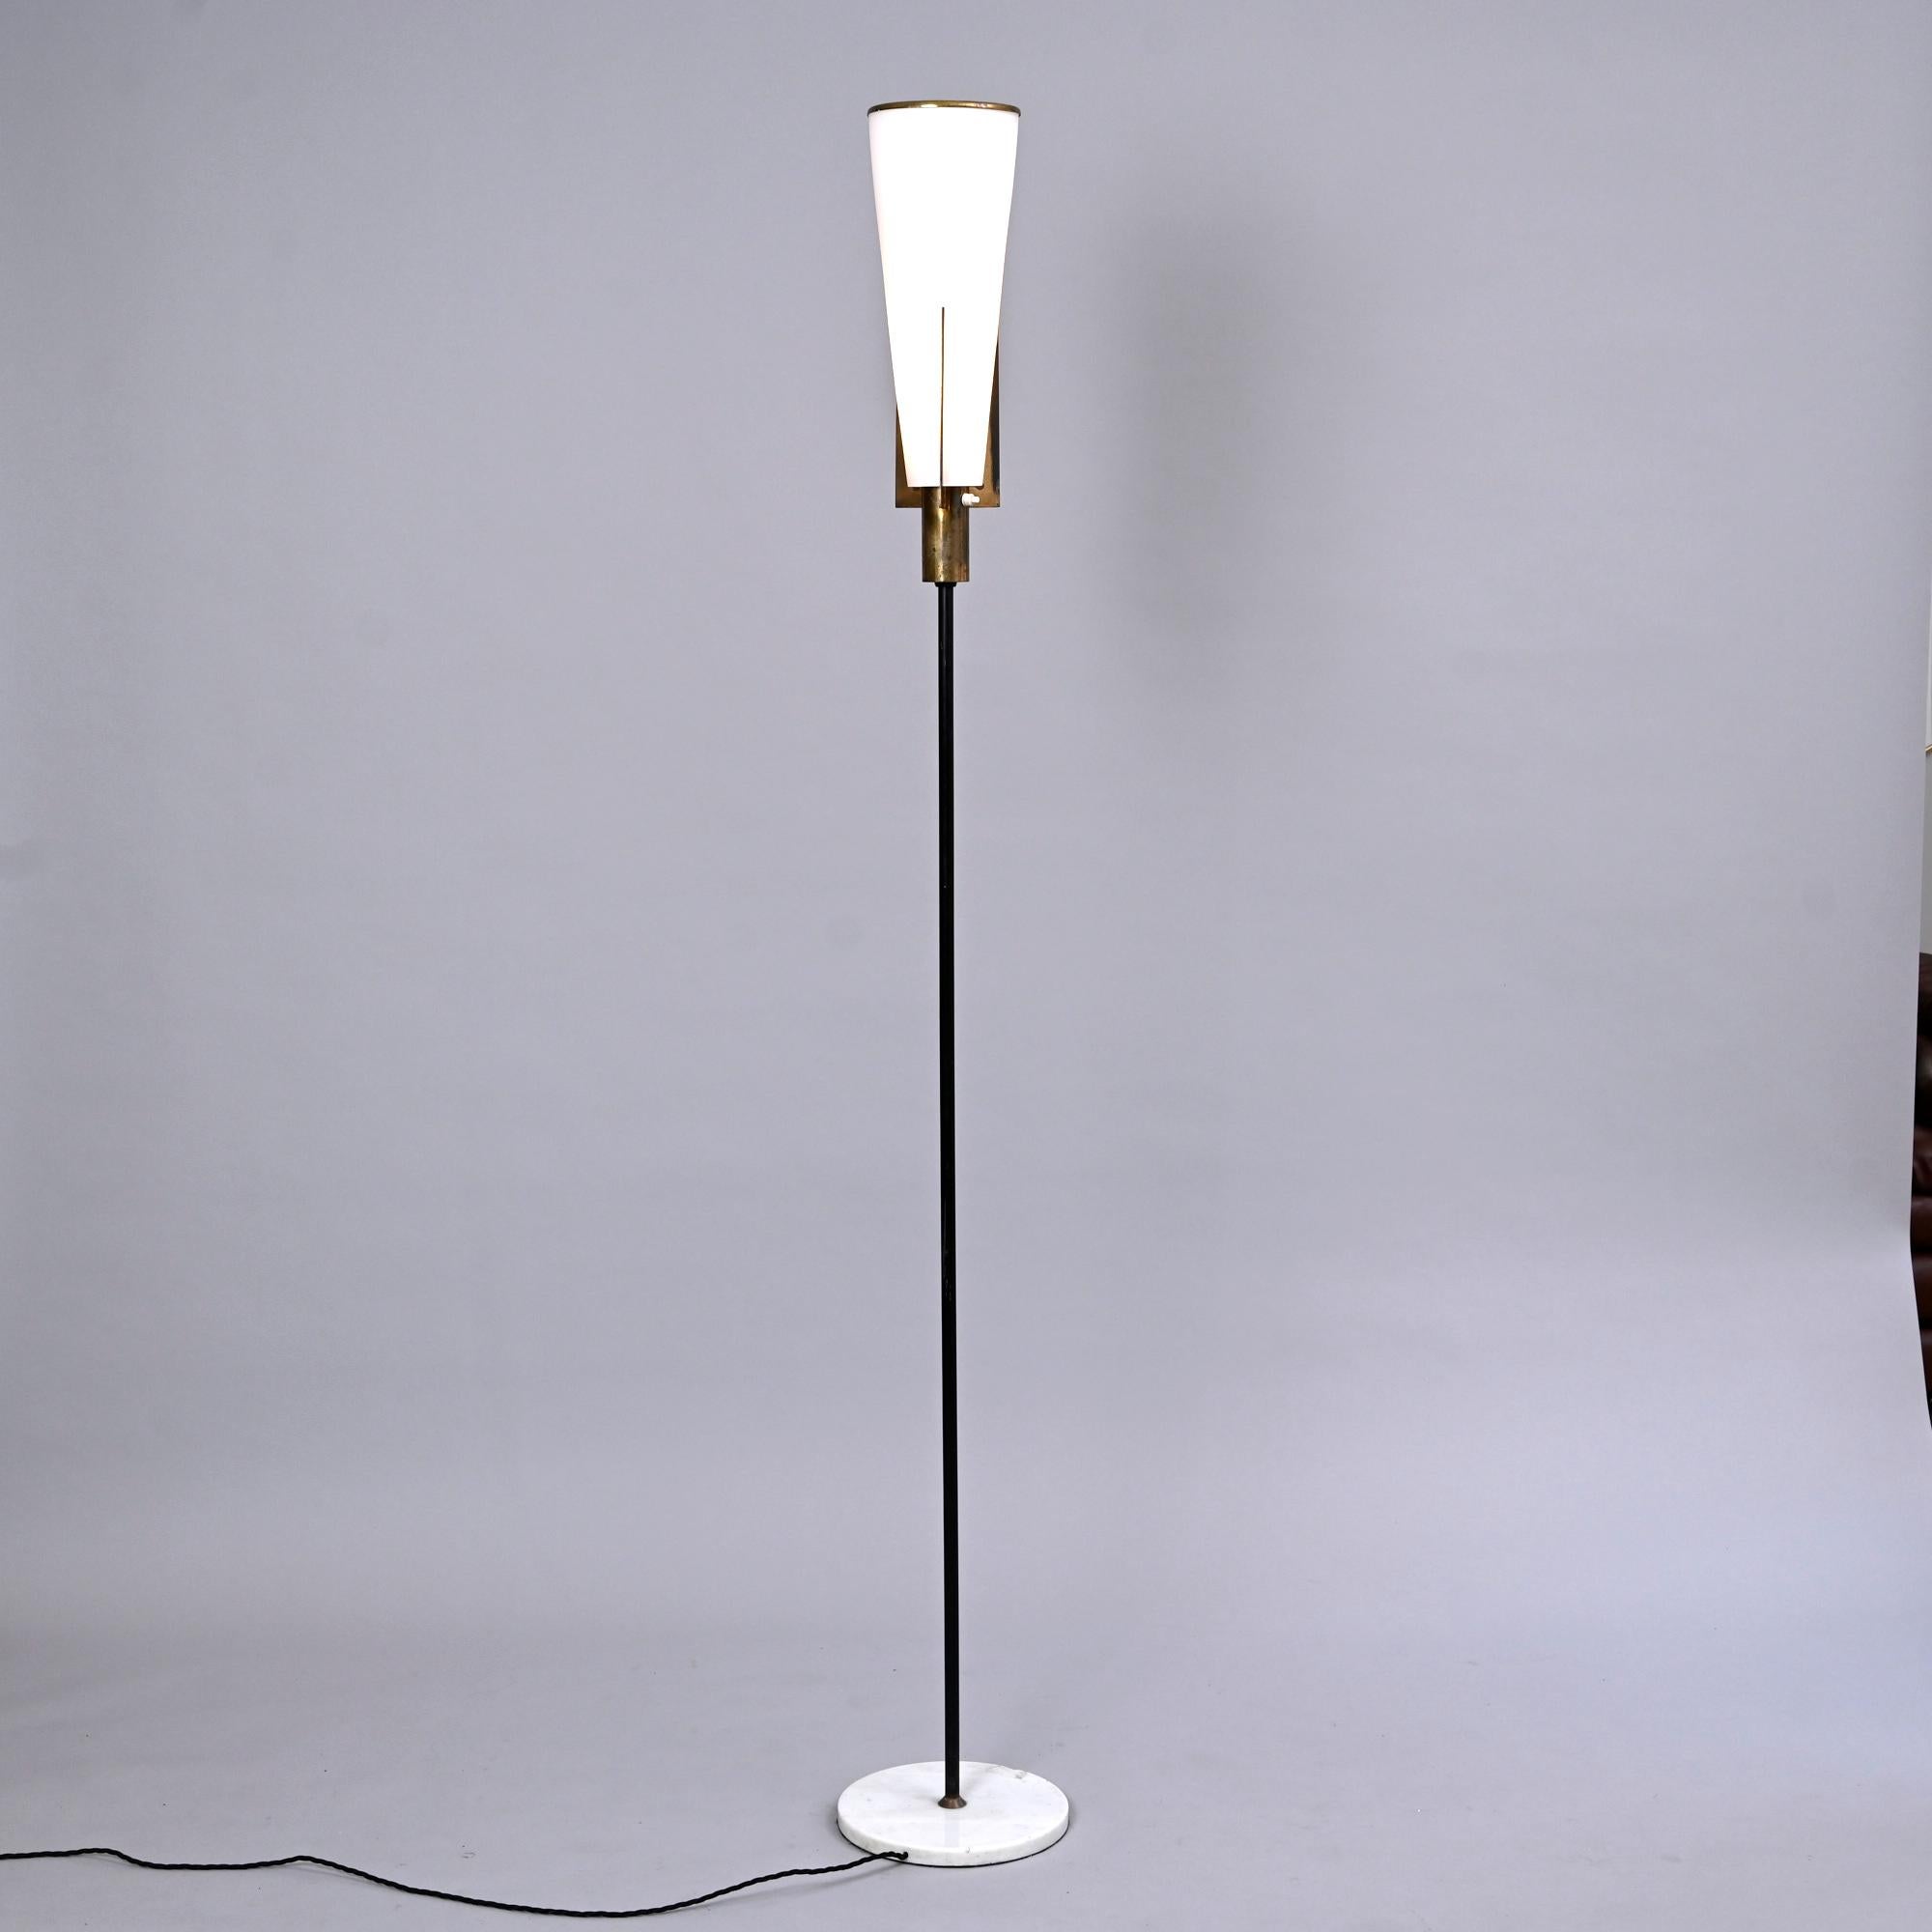 Version très rare du lampadaire de l'applique Stilnovo. Modèle 2021/2

Lampadaire original. Le laiton a une belle patine. 

La lampe a été recâblée et est structurellement saine.